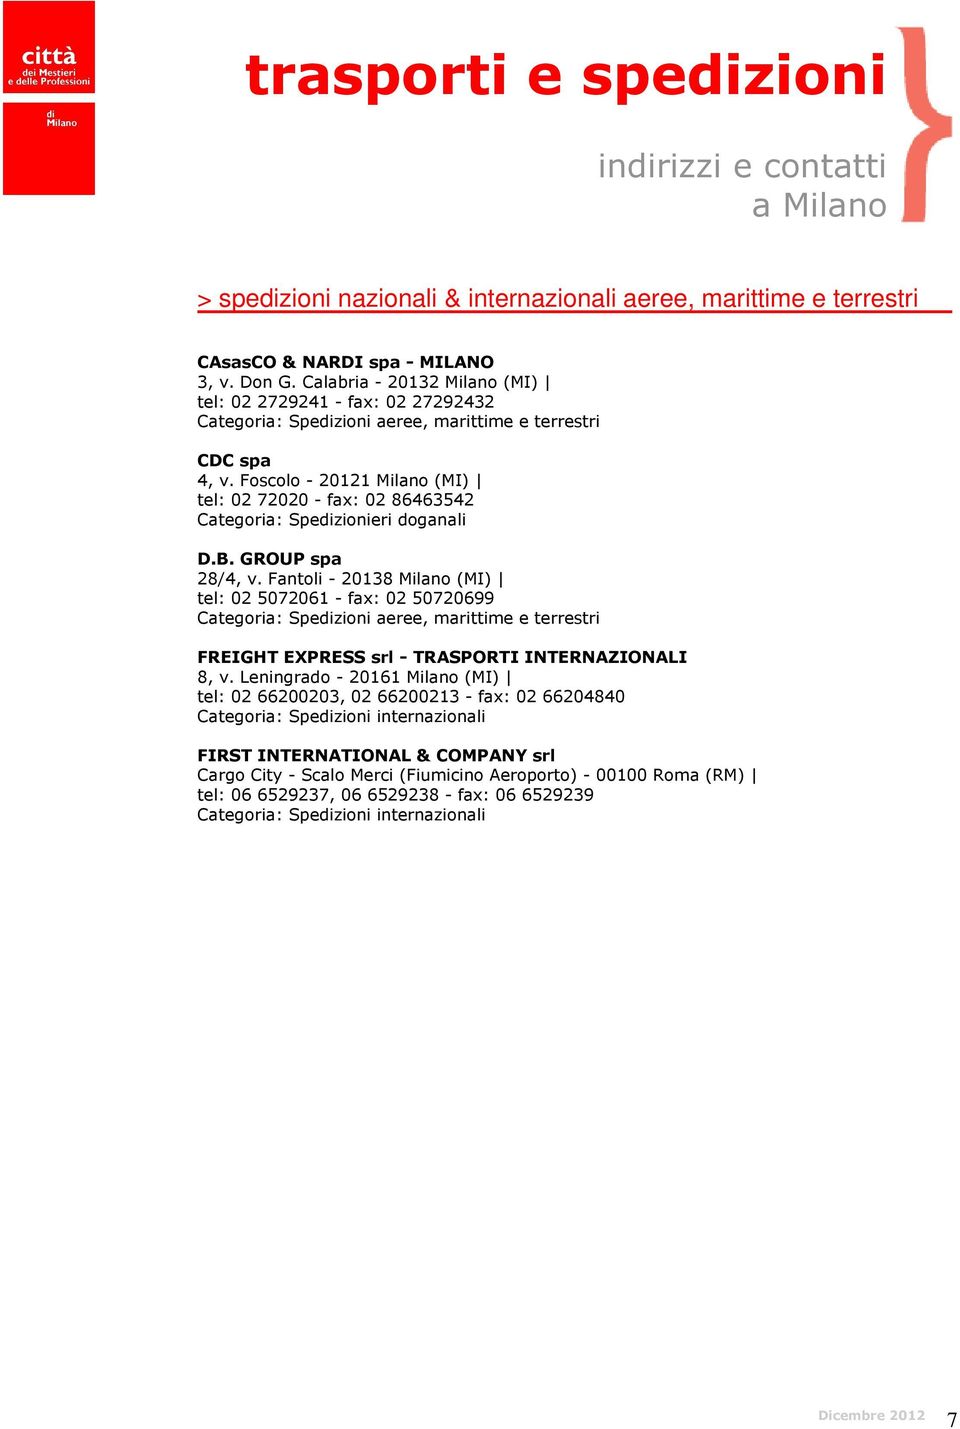 Foscolo - 20121 Milano (MI) tel: 02 72020 - fax: 02 86463542 Categoria: Spedizionieri doganali D.B. GROUP spa 28/4, v.